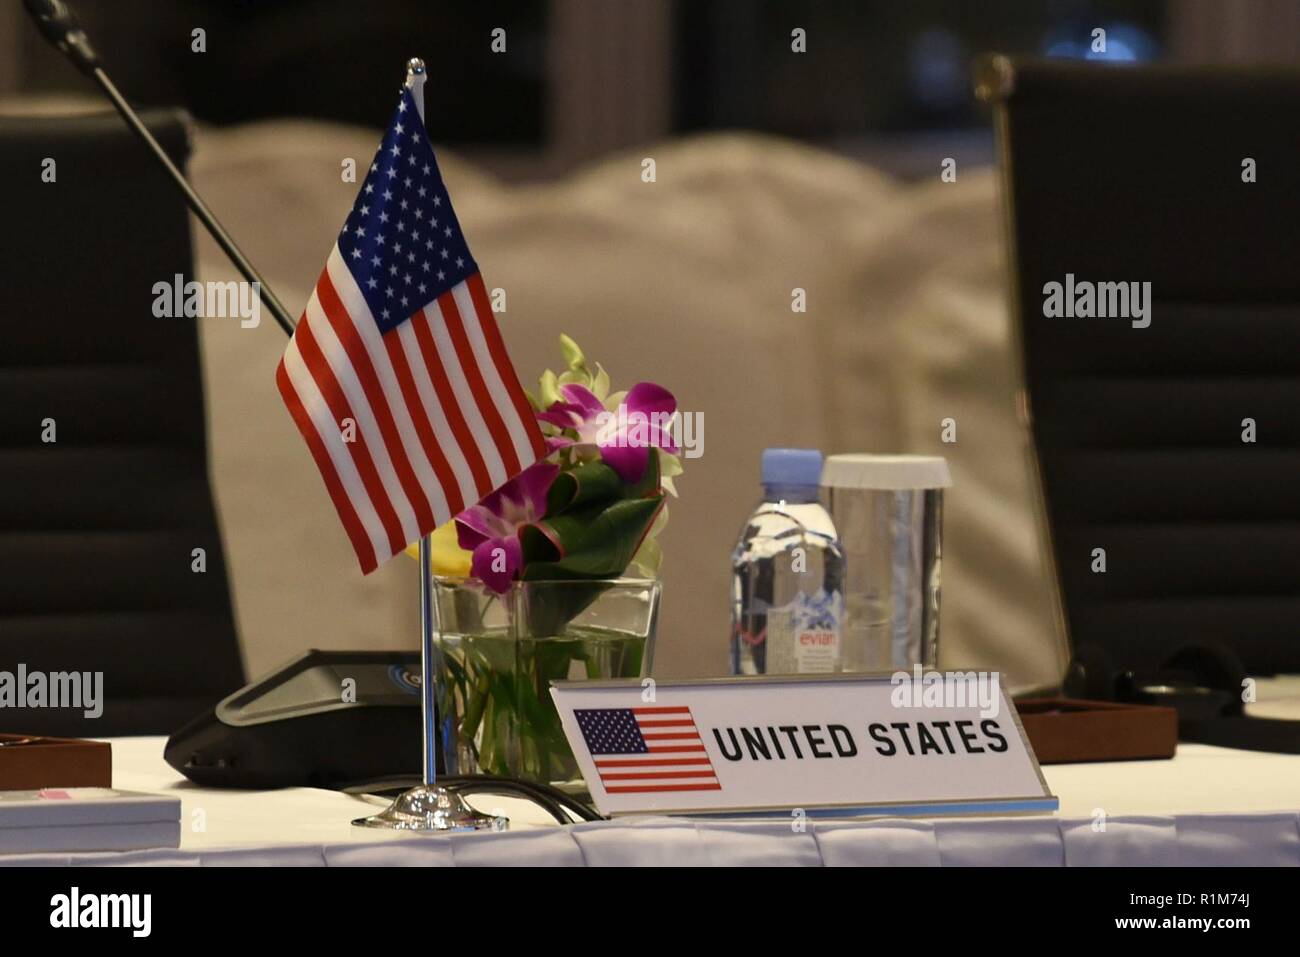 Stati Uniti Il Segretario della Difesa James N. Mattis assiste l'ASEAN dei ministri della Difesa Meeting-Plus in Singapore, Ottobre 19, 2018. Foto Stock